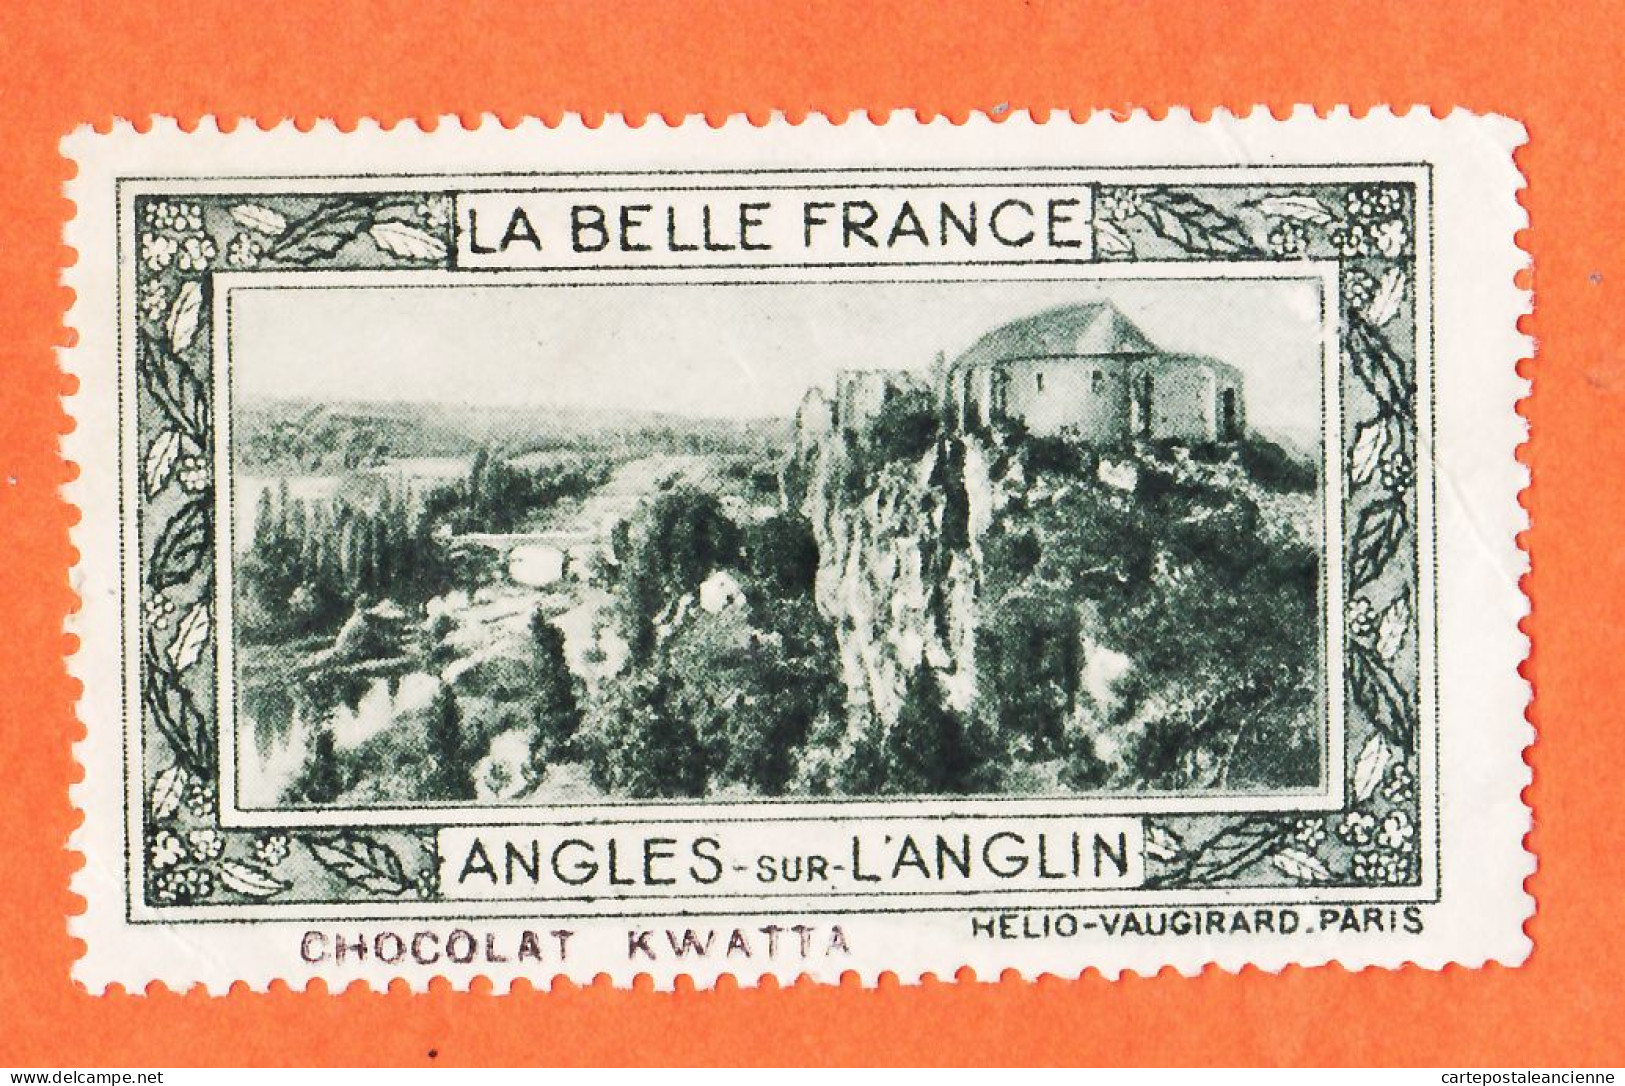 36975 / ⭐ ◉ LANGLES-sur-L'ANGLIN 86-Yonne Pub Chocolat KWATTA Vignette Collection BELLE FRANCE HELIO-VAUGIRARD - Tourismus (Vignetten)